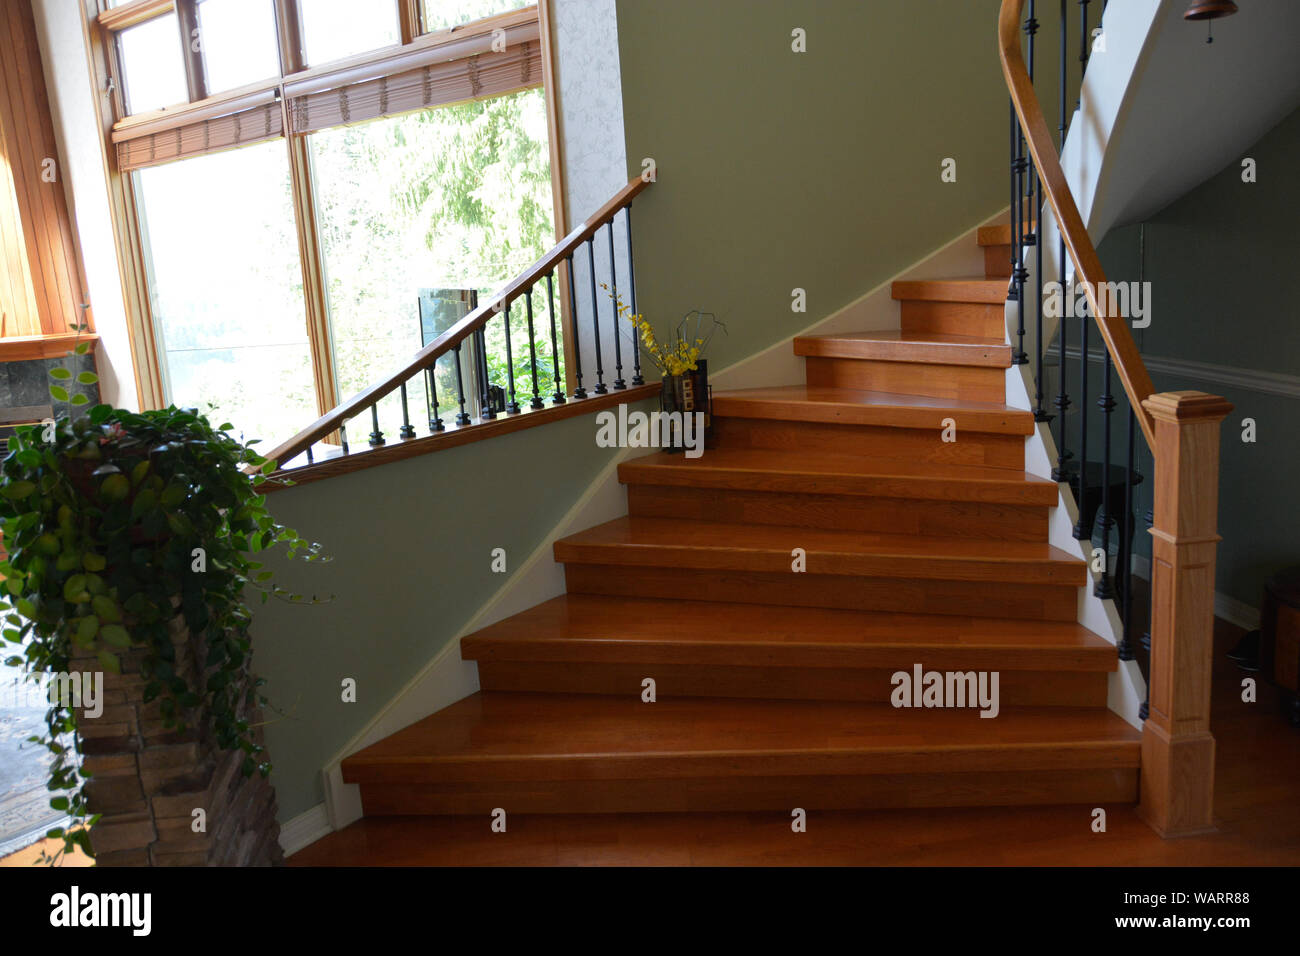 Interieur aus Holz Treppe von Luxus Wohnhaus mit Geländer. Stockfoto